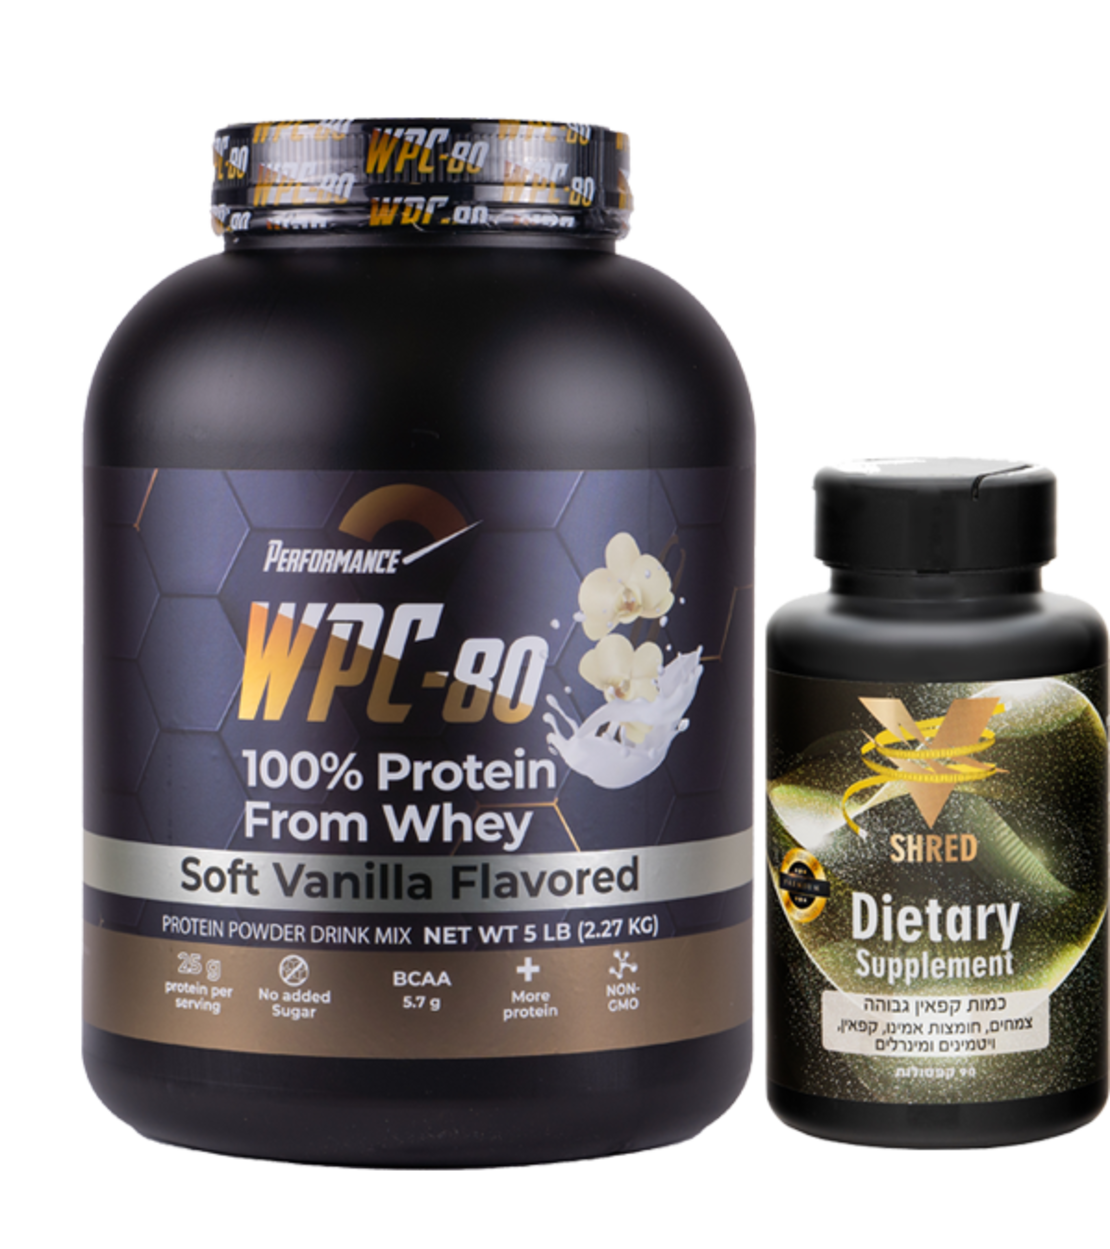 אבקת חלבון הטובה בעולם | אבקת חלבון  WPC-80 PERFORMANCE + שורף שומן חזק במיוחד V SHRED כשר בדץ 90 קפסולות